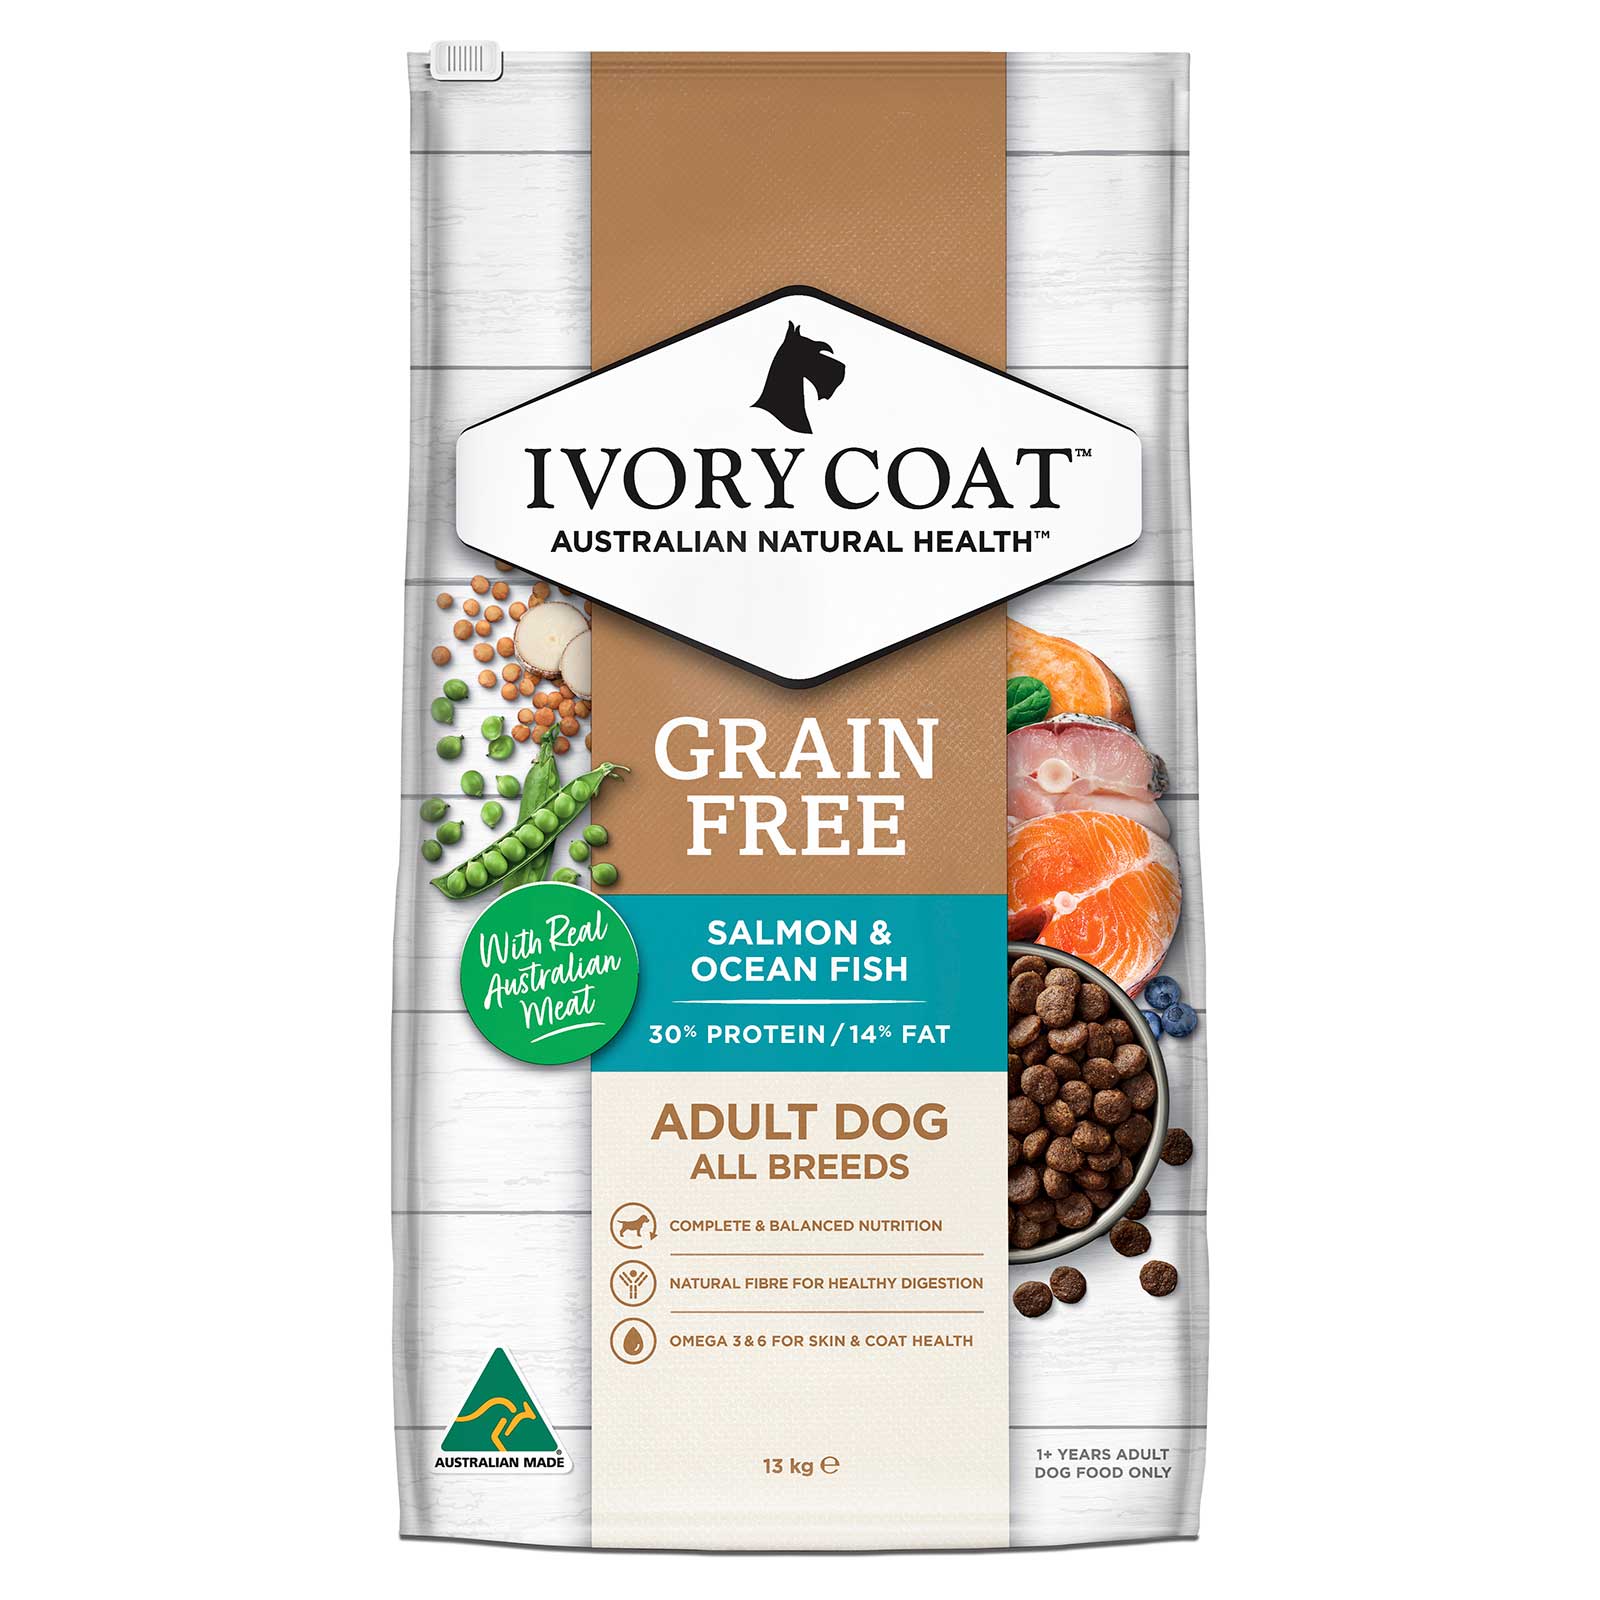 Ivory Coat Grain Free Dog Food Adult Salmon & Ocean Fish